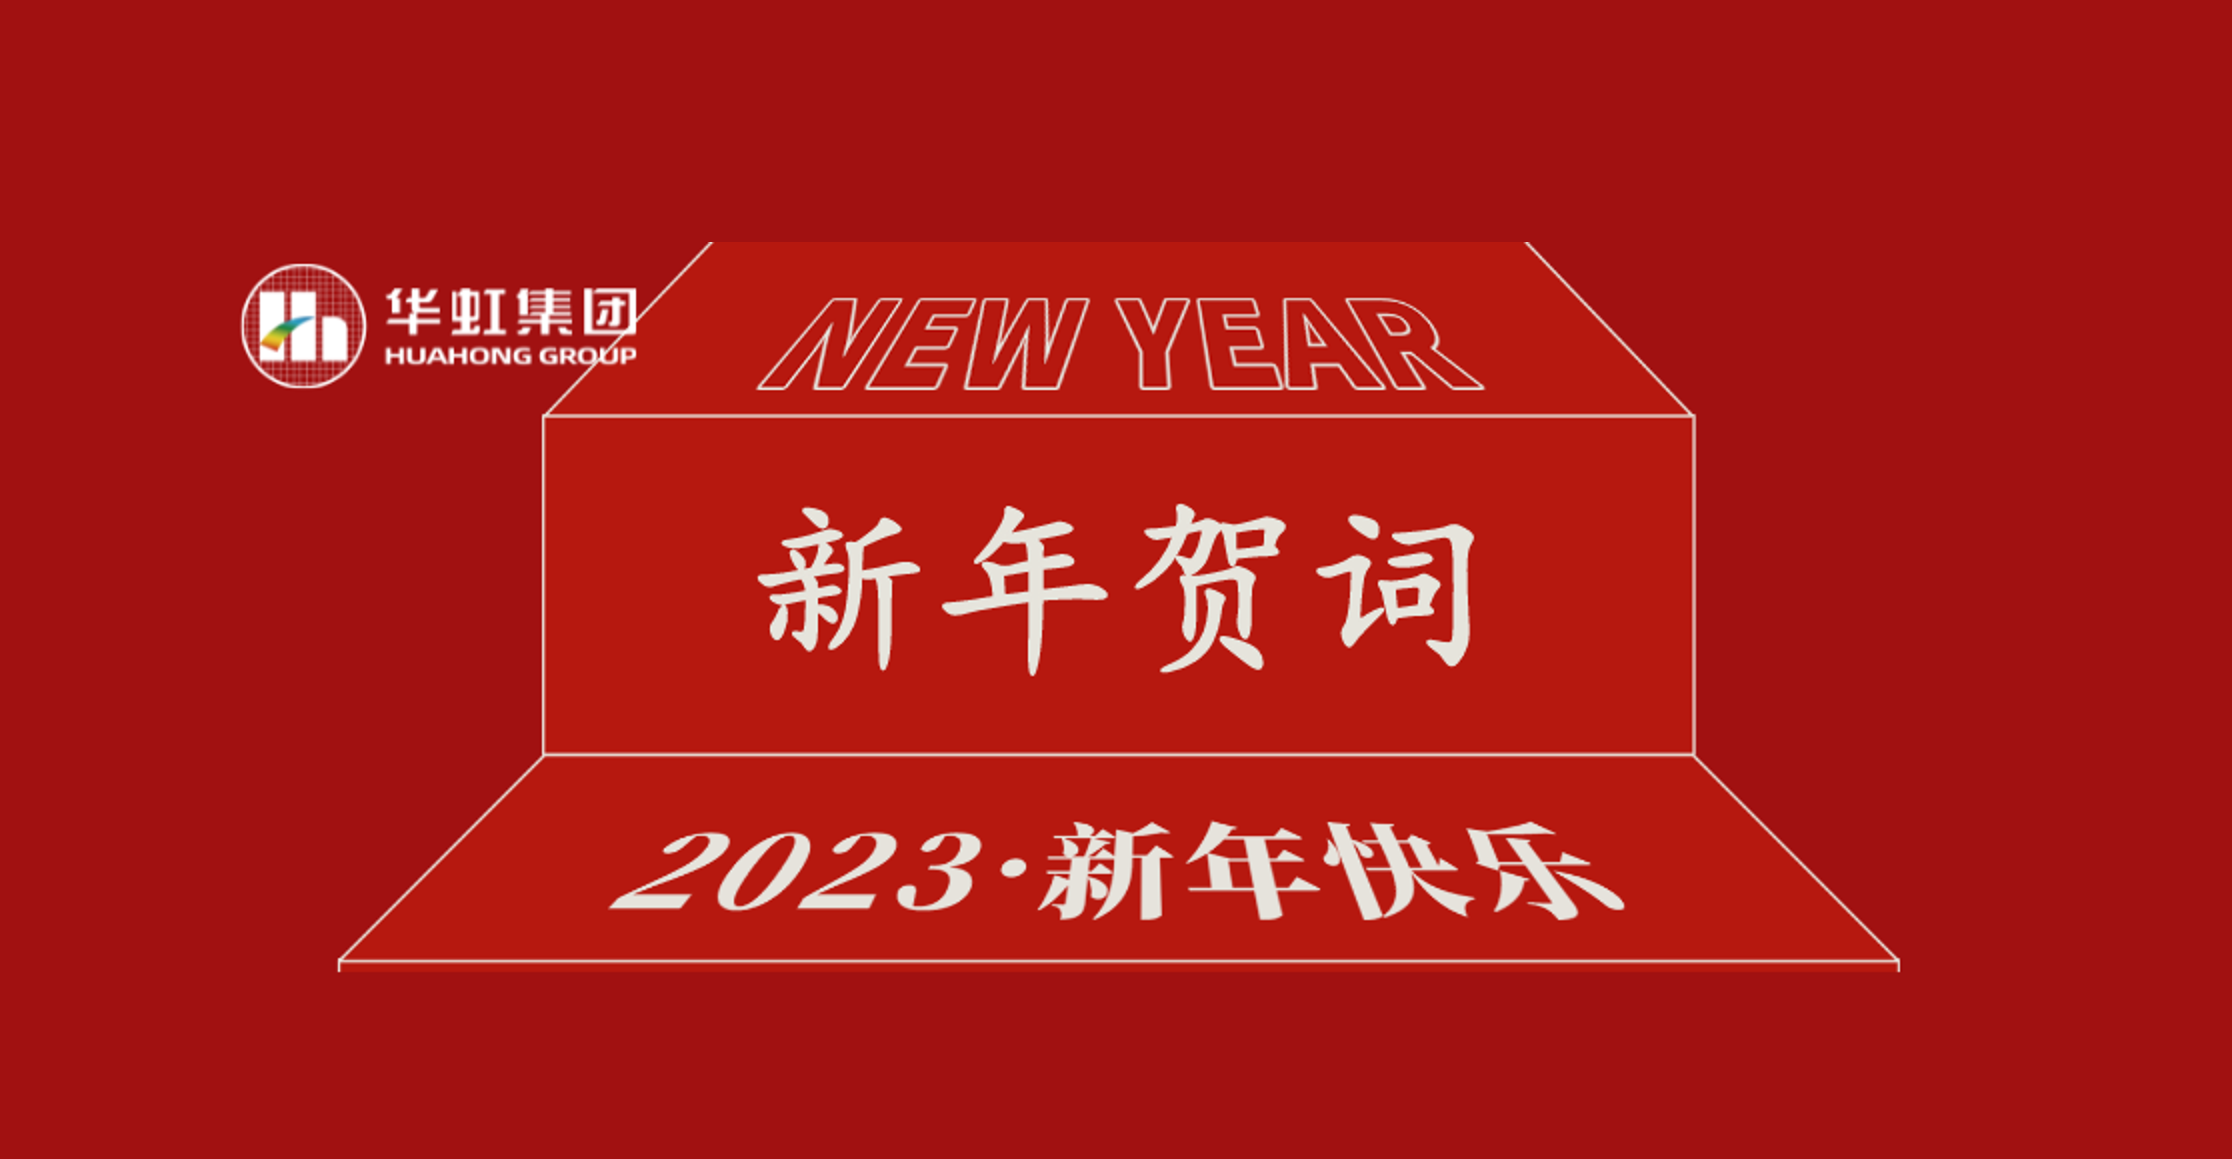 b体育官方体育党委书记、董事长张素心2023年新年贺词